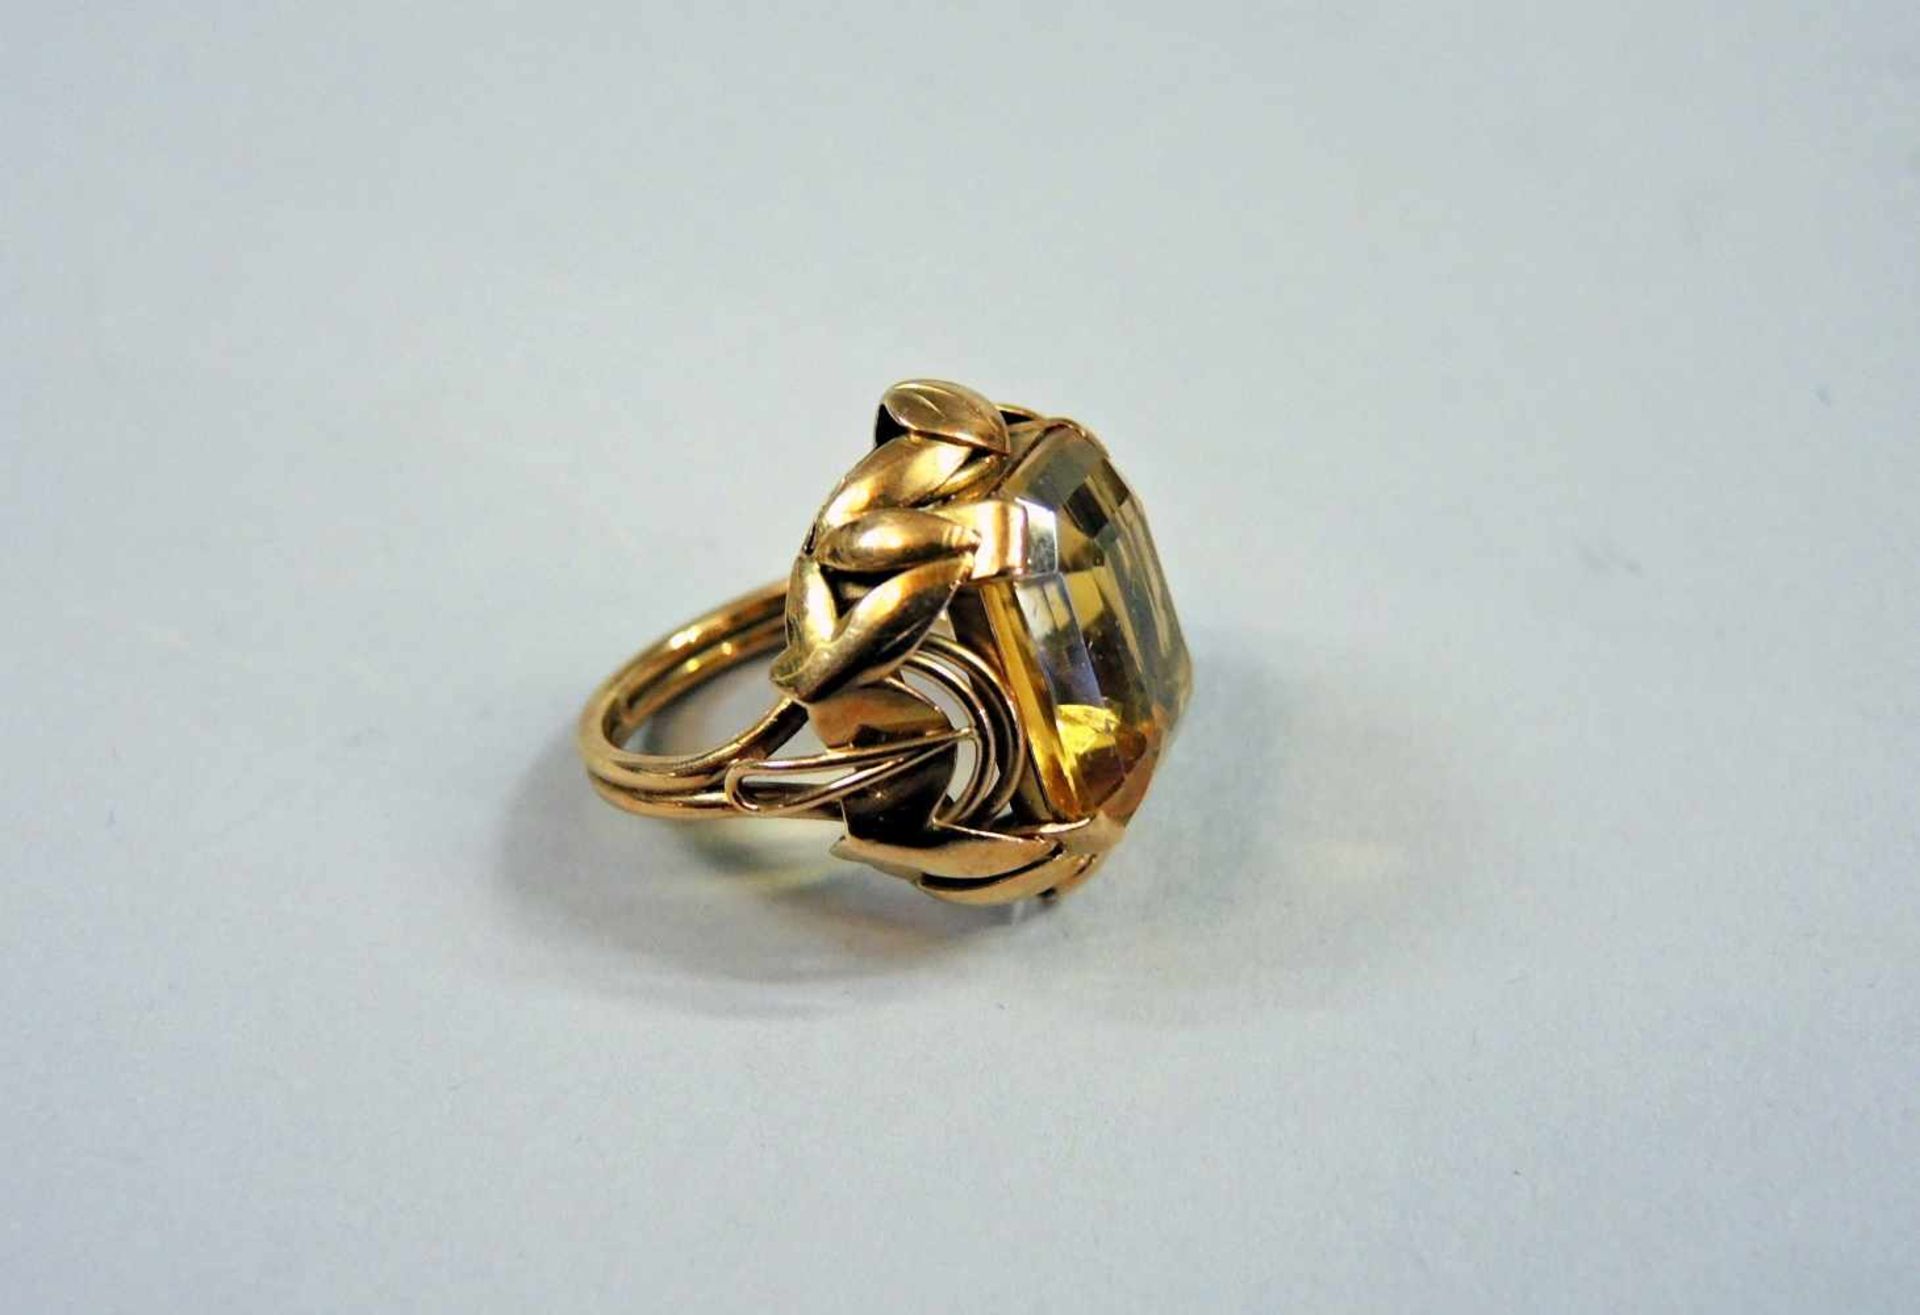 Farbstein-Ring 14 K. Gold, mit Citrin. 1940er- Jahre. Ringgröße 54. Gewicht 9,7 g